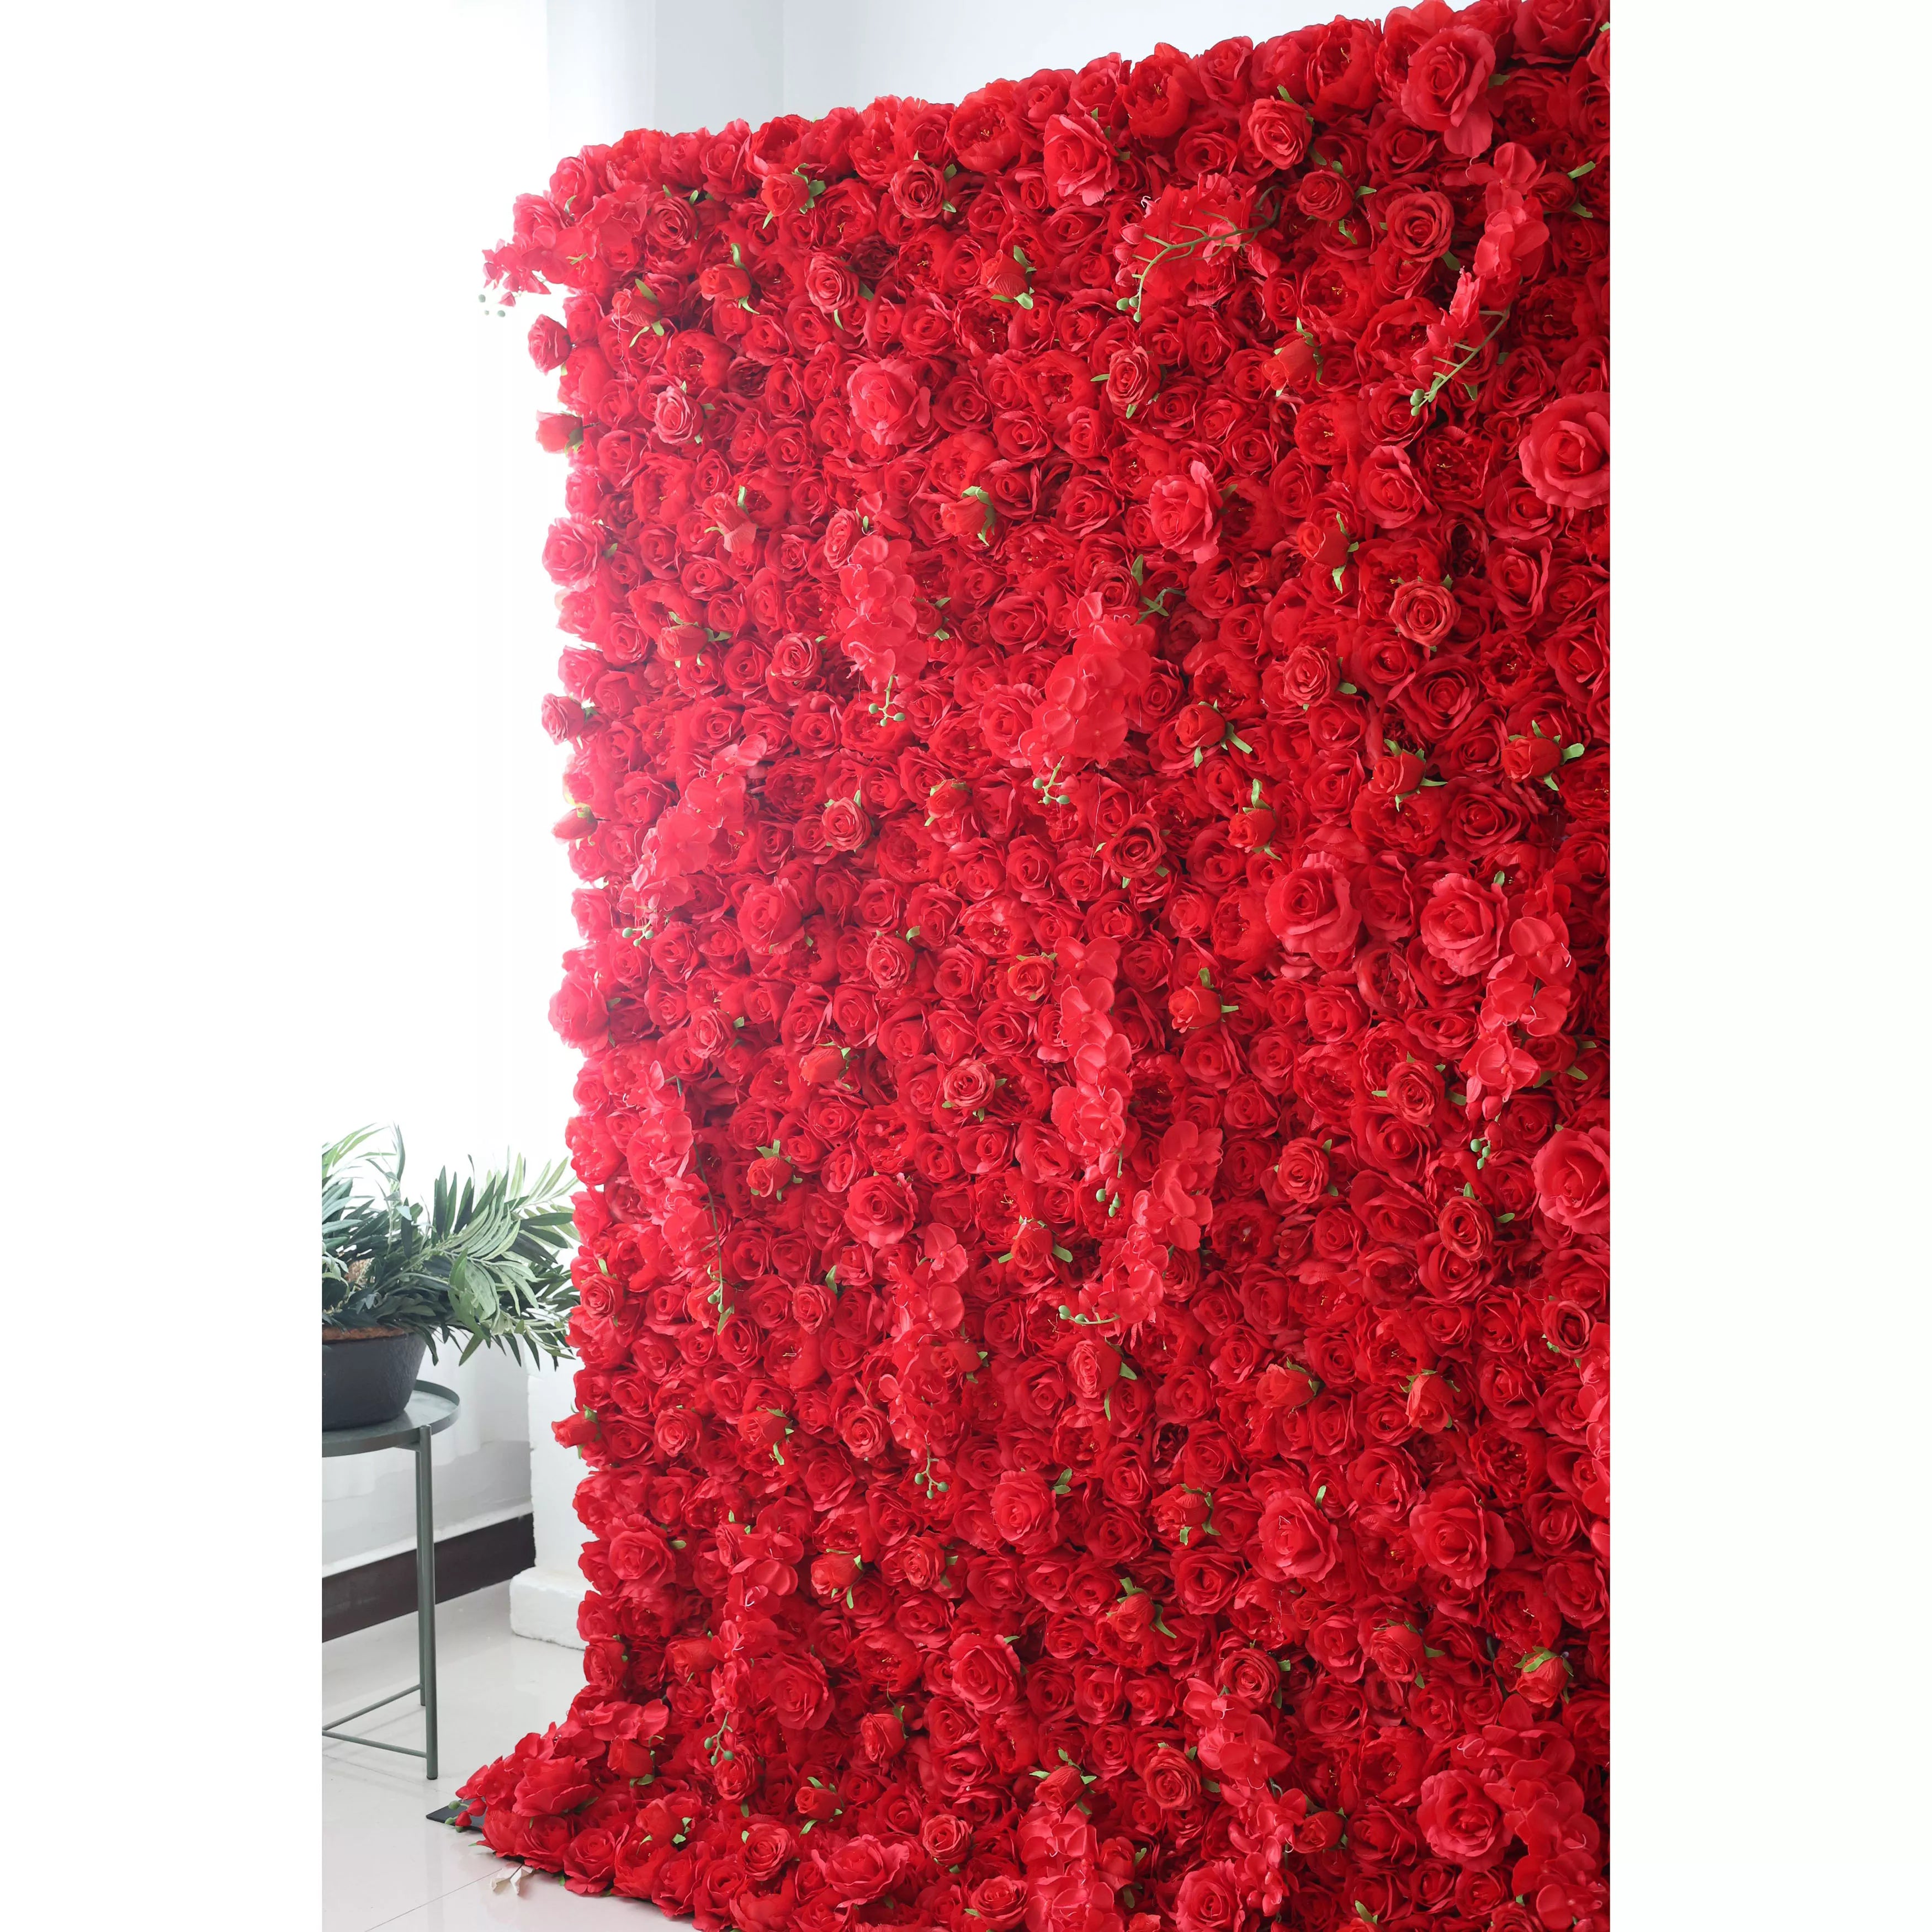 زهور فالار قماش صناعي زهري أحمر زهري خلفية جدار زفاف ، ديكور حفلات زهور ، حدث